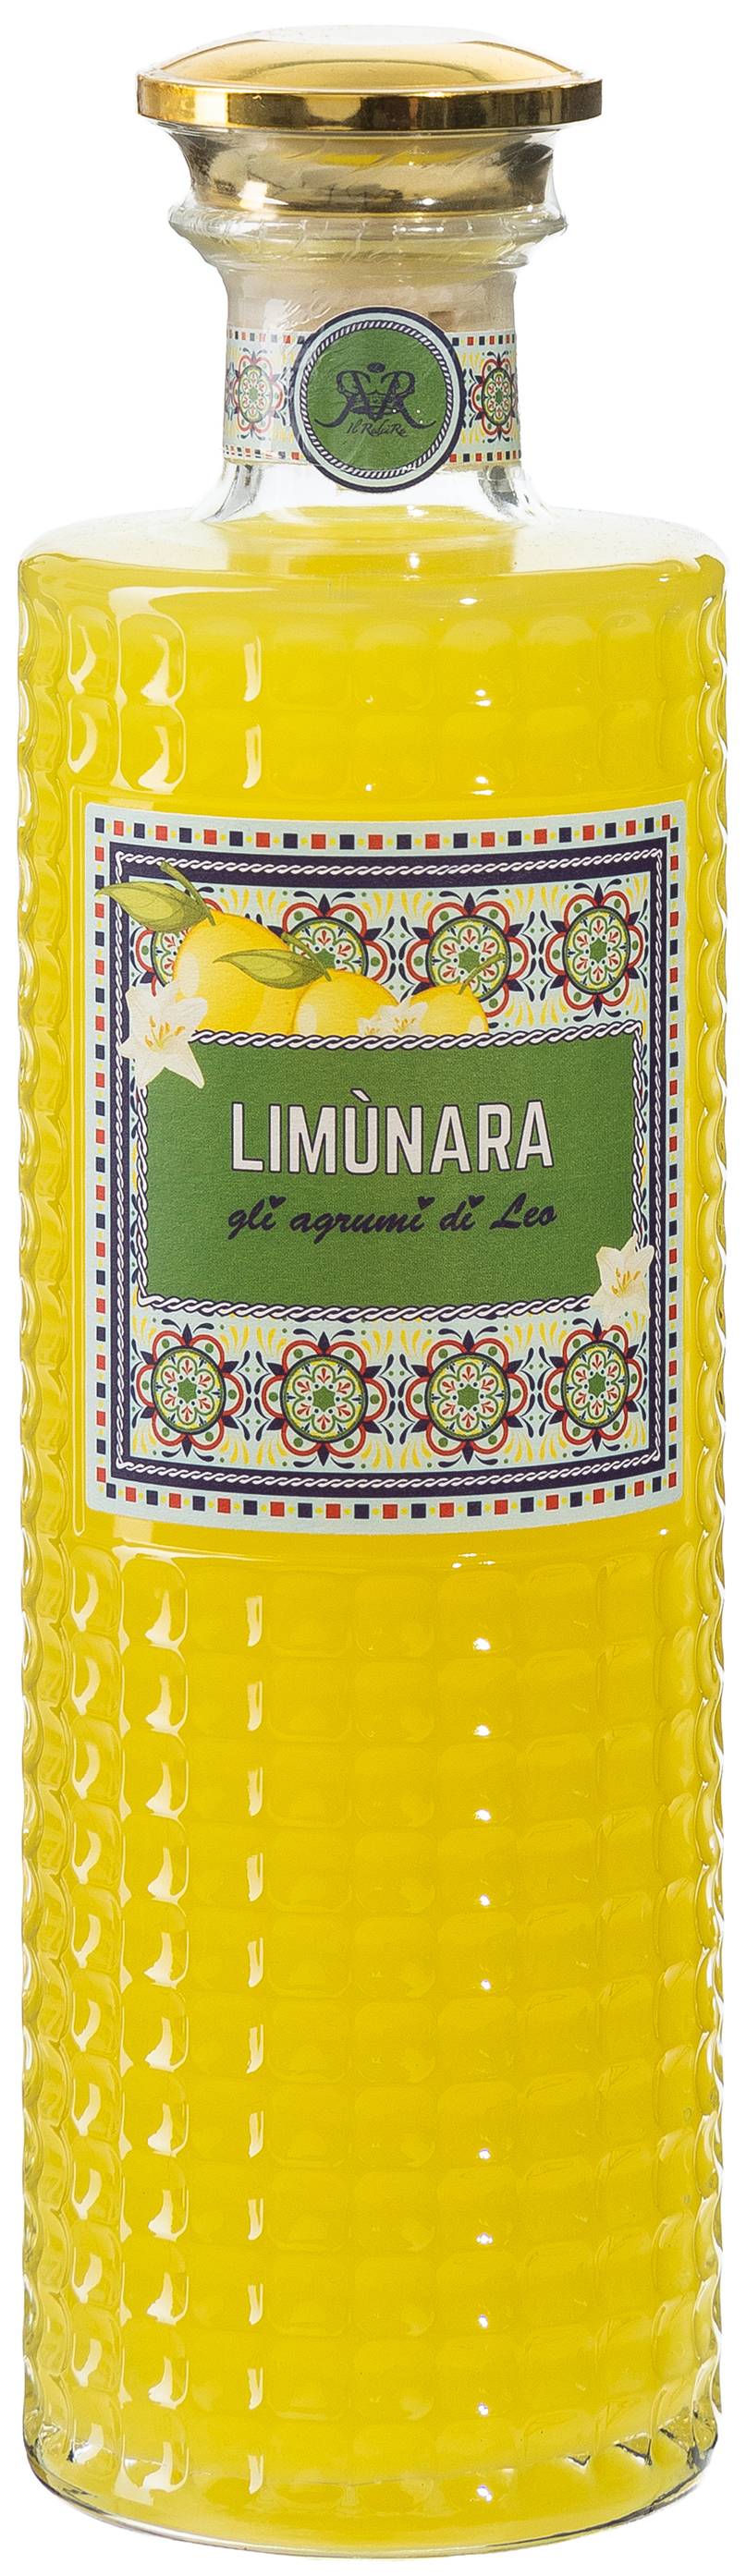 Limunara Limoncello 30% vol. 0,7L